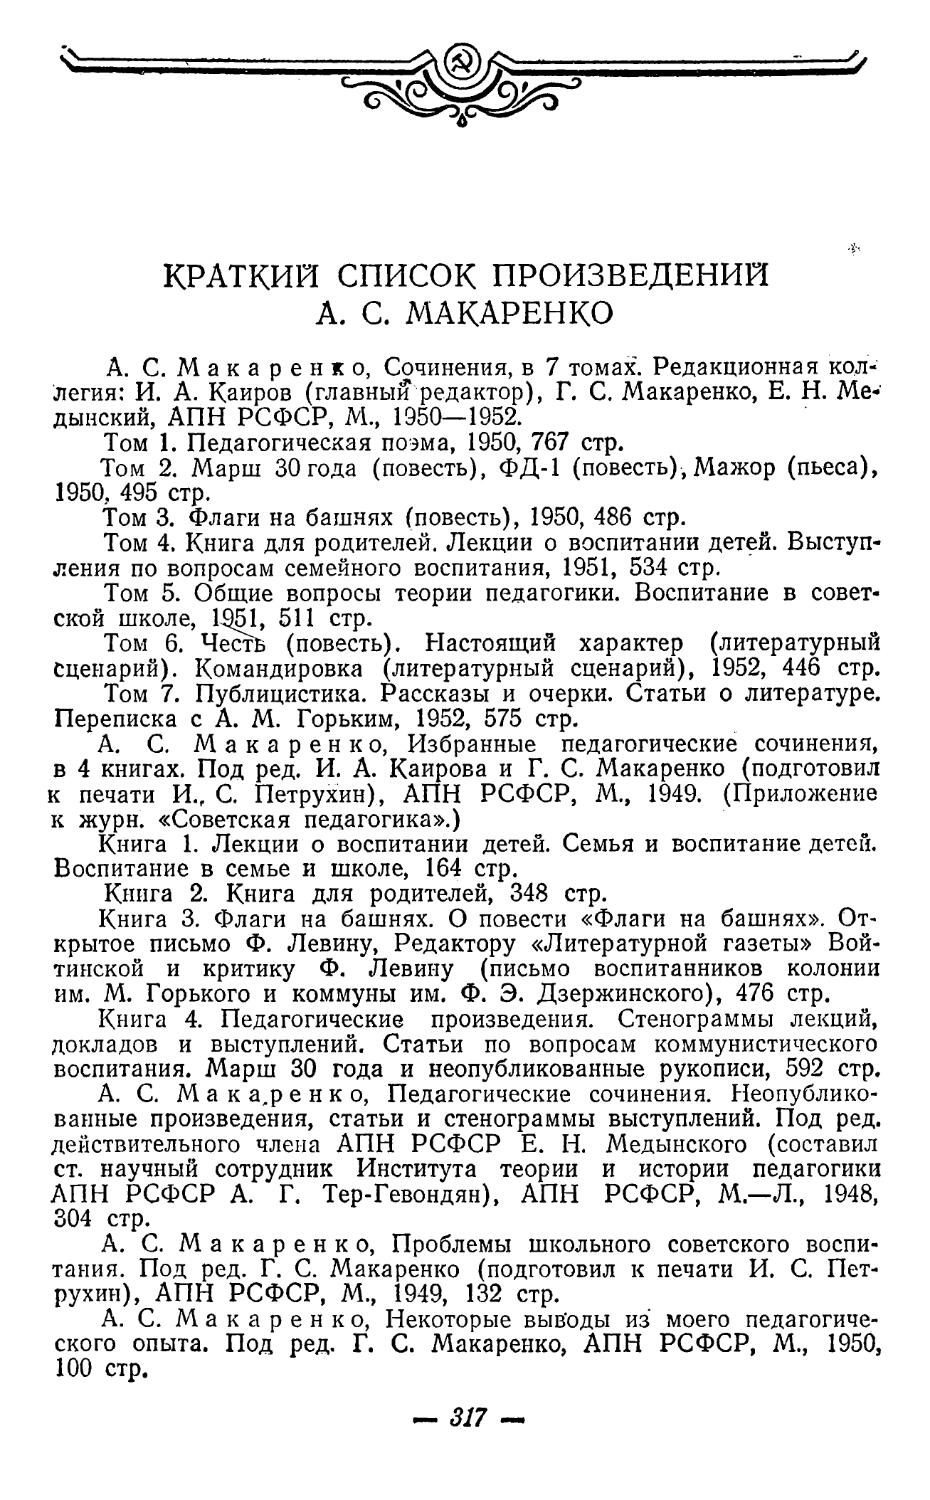 Краткий список произведений А. С. Макаренко.